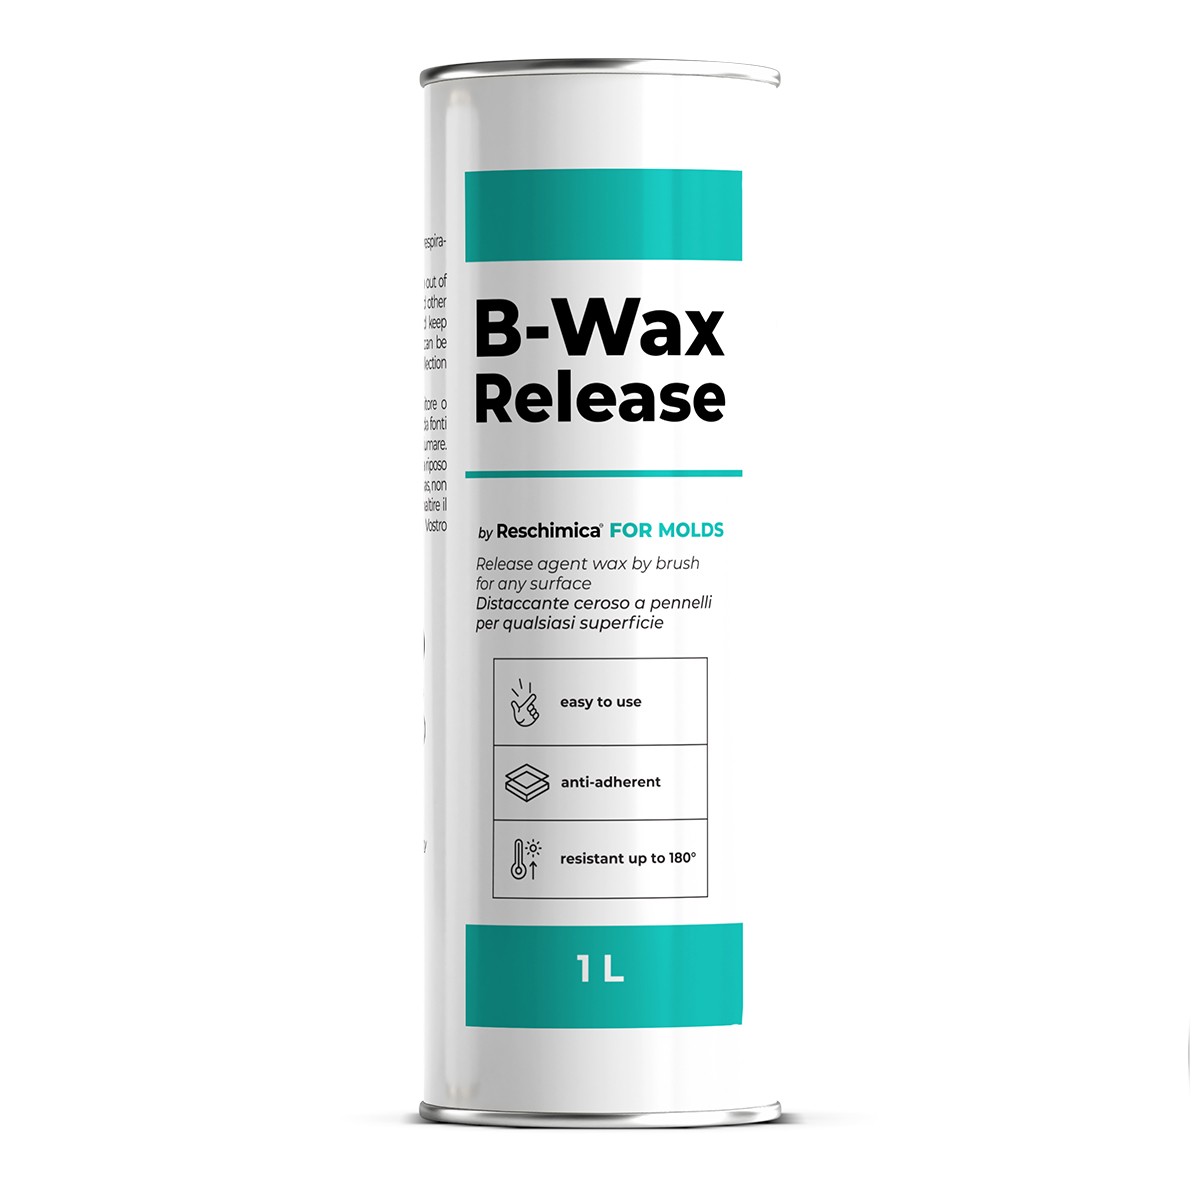 B-WAX RELEASE - Hochwertiges Pinseltrennmittel, verhindert die Haftung zwischen Silikonkautschuken und Harzen